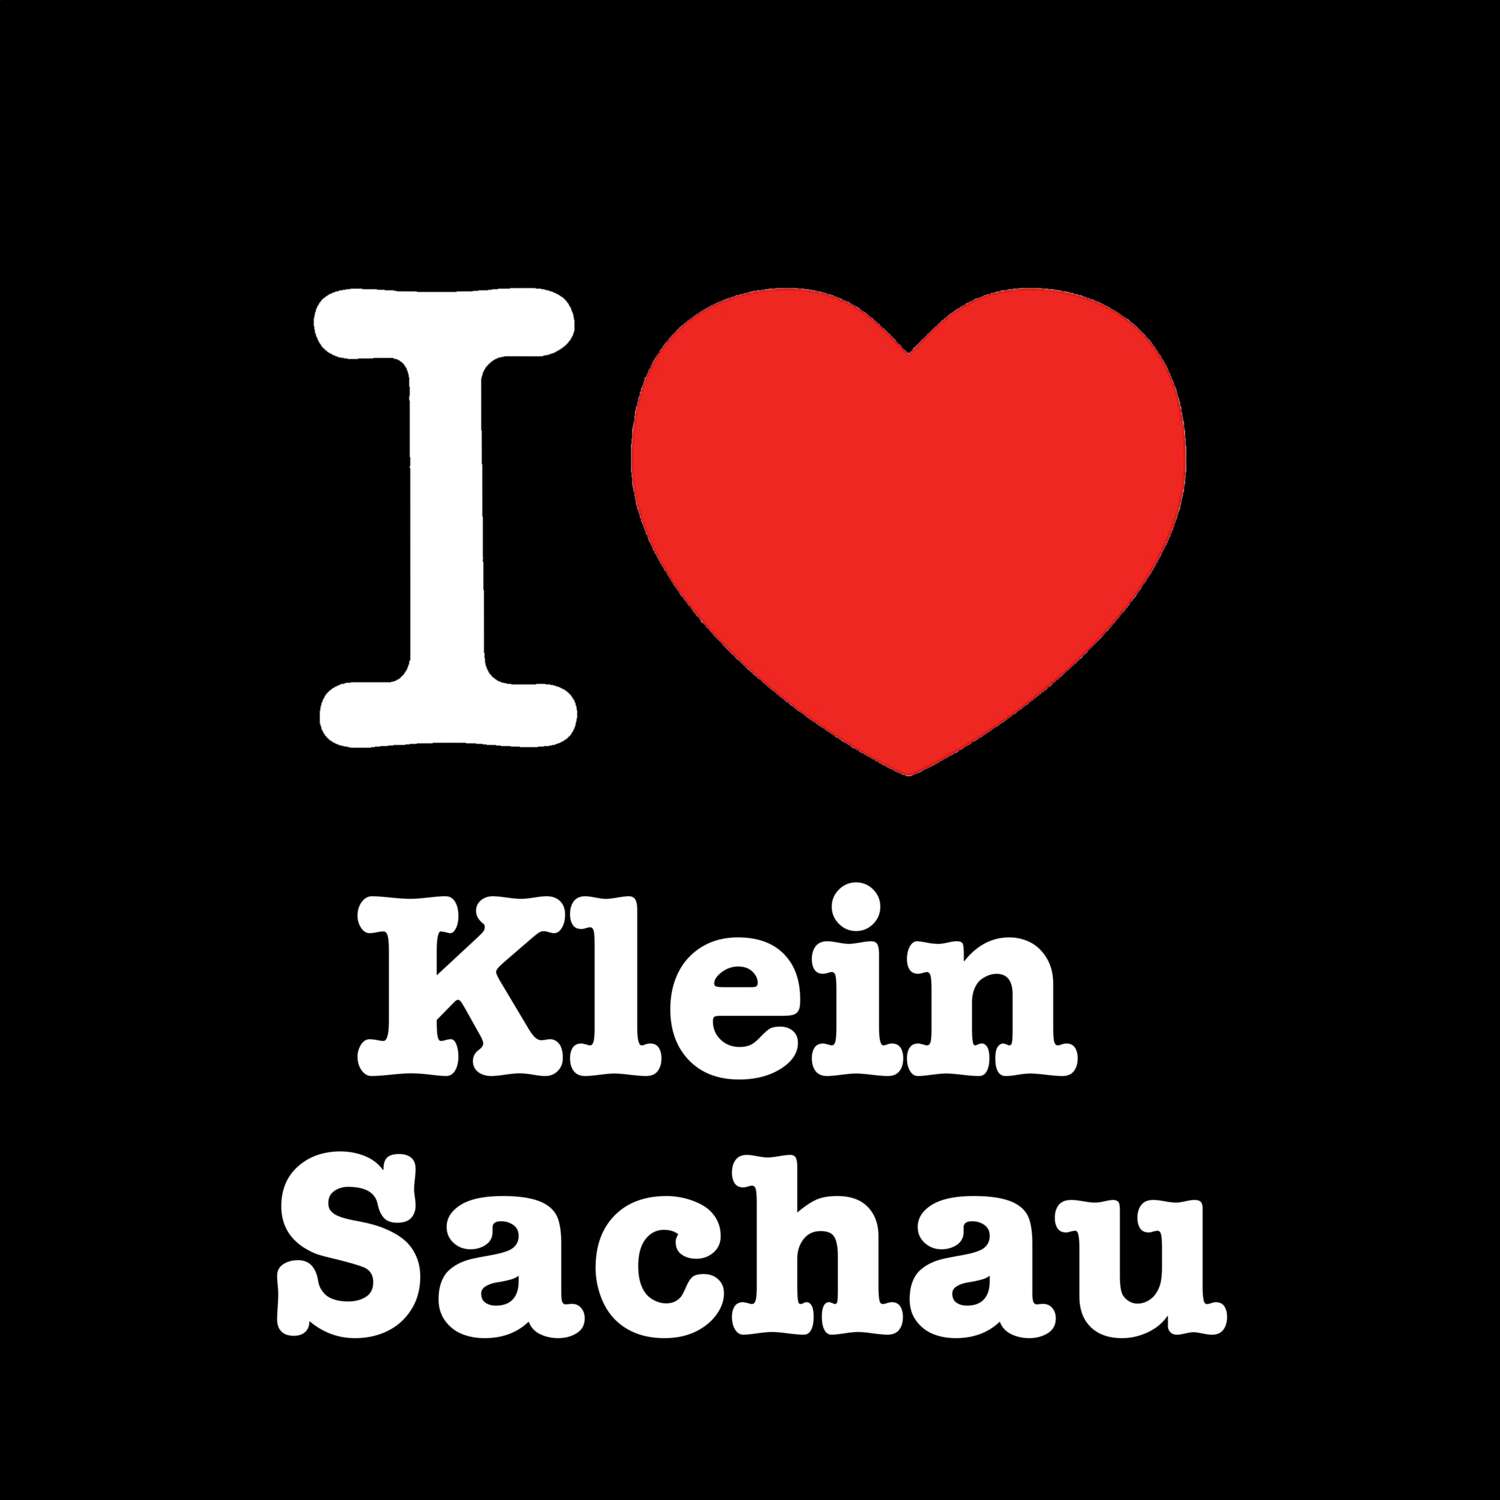 Klein Sachau T-Shirt »I love«